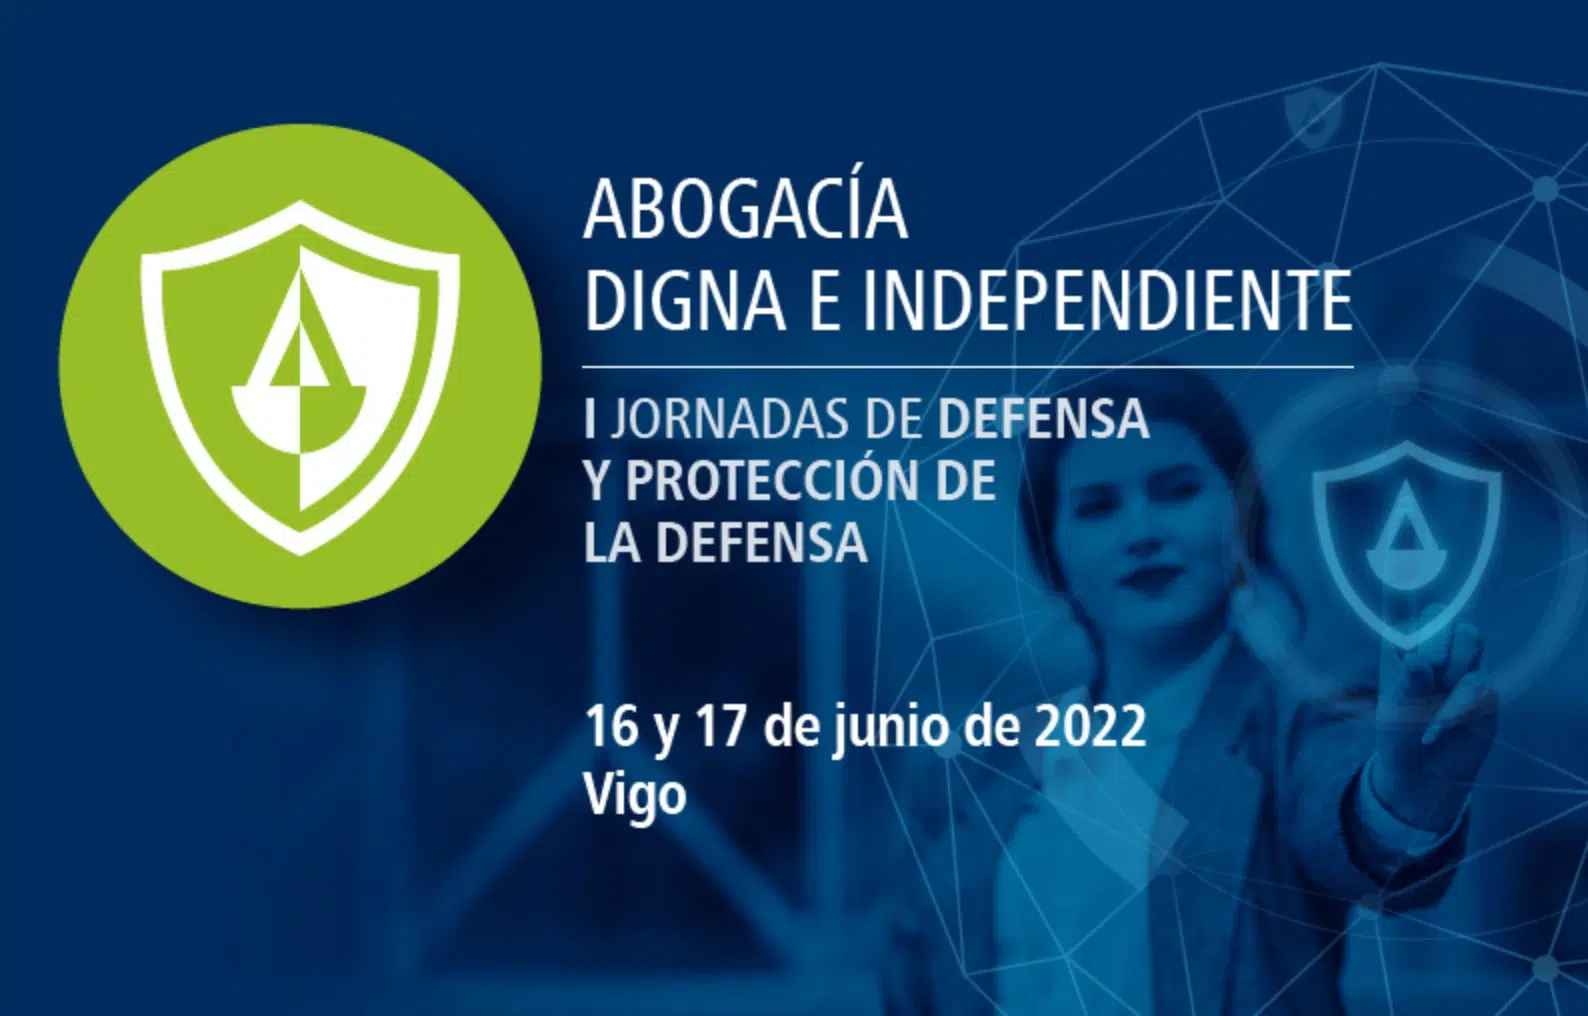 Vigo acogerá el 16 y 17 de junio las I Jornadas de Defensa y Protección de la Defensa de la Abogacía